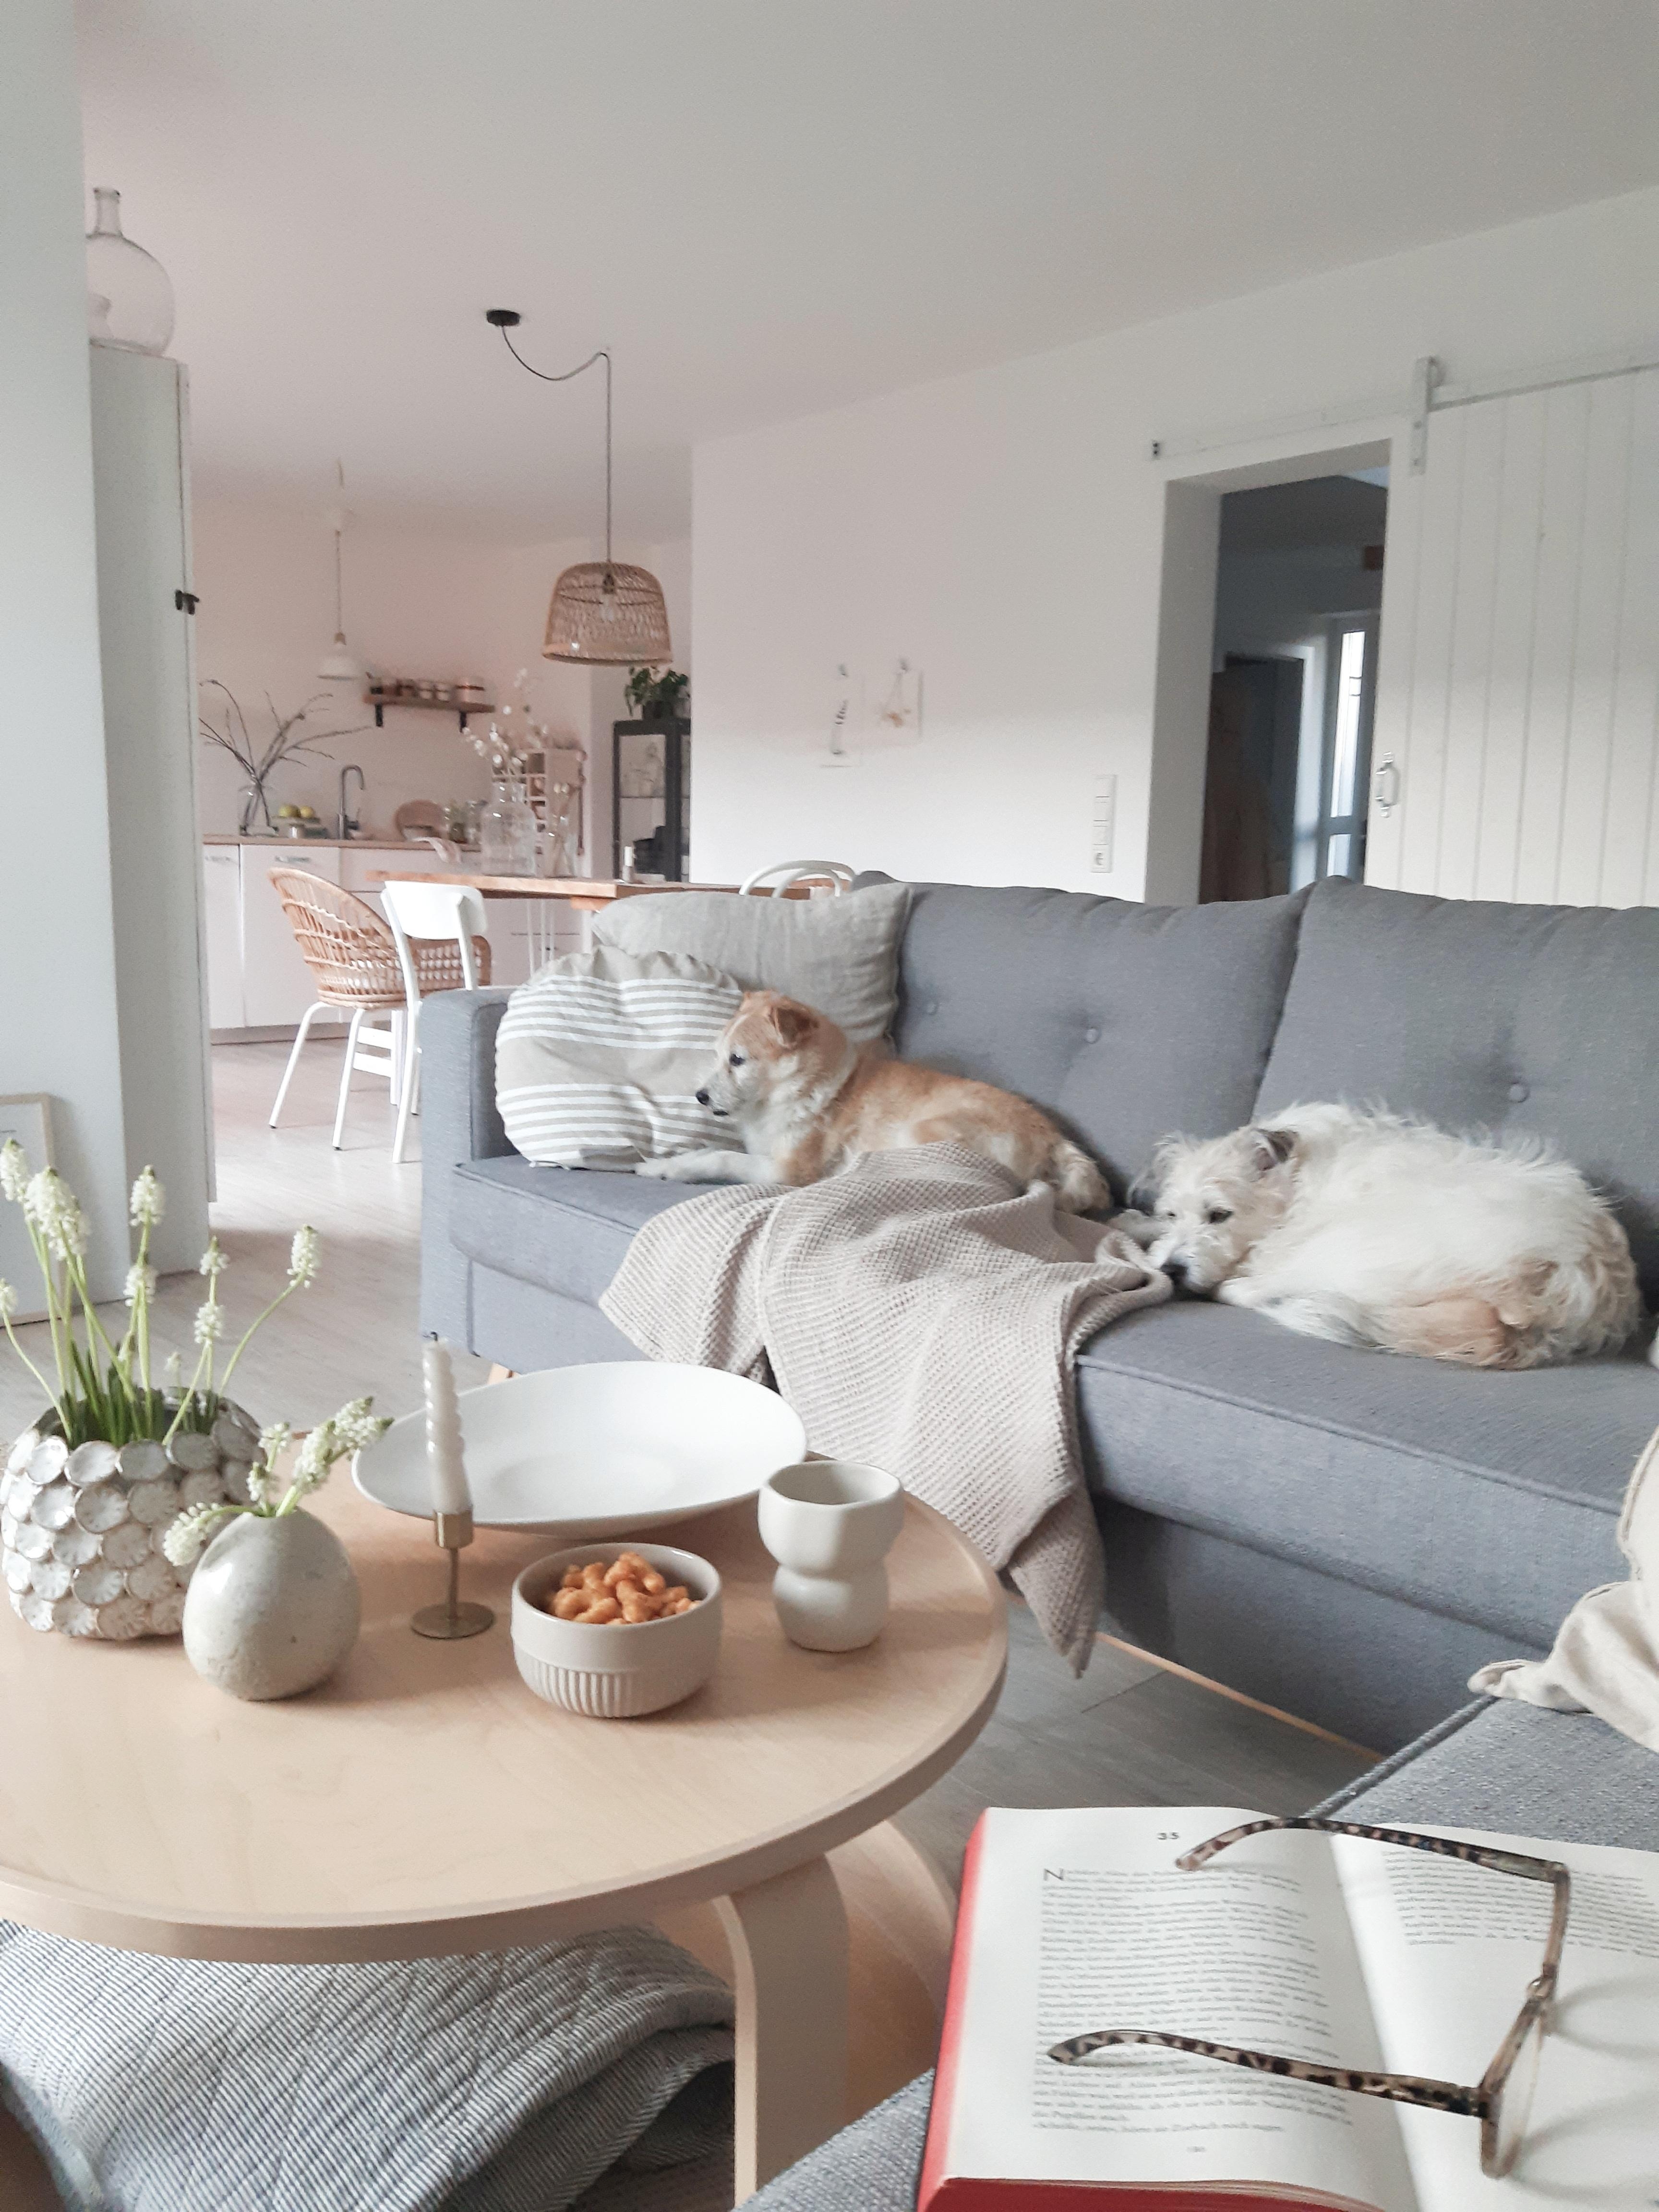 Gemütlich machen...
#couchstyle #wohnzimmer #interior #couchliebt #slowliving #gemütlich #nordichome 